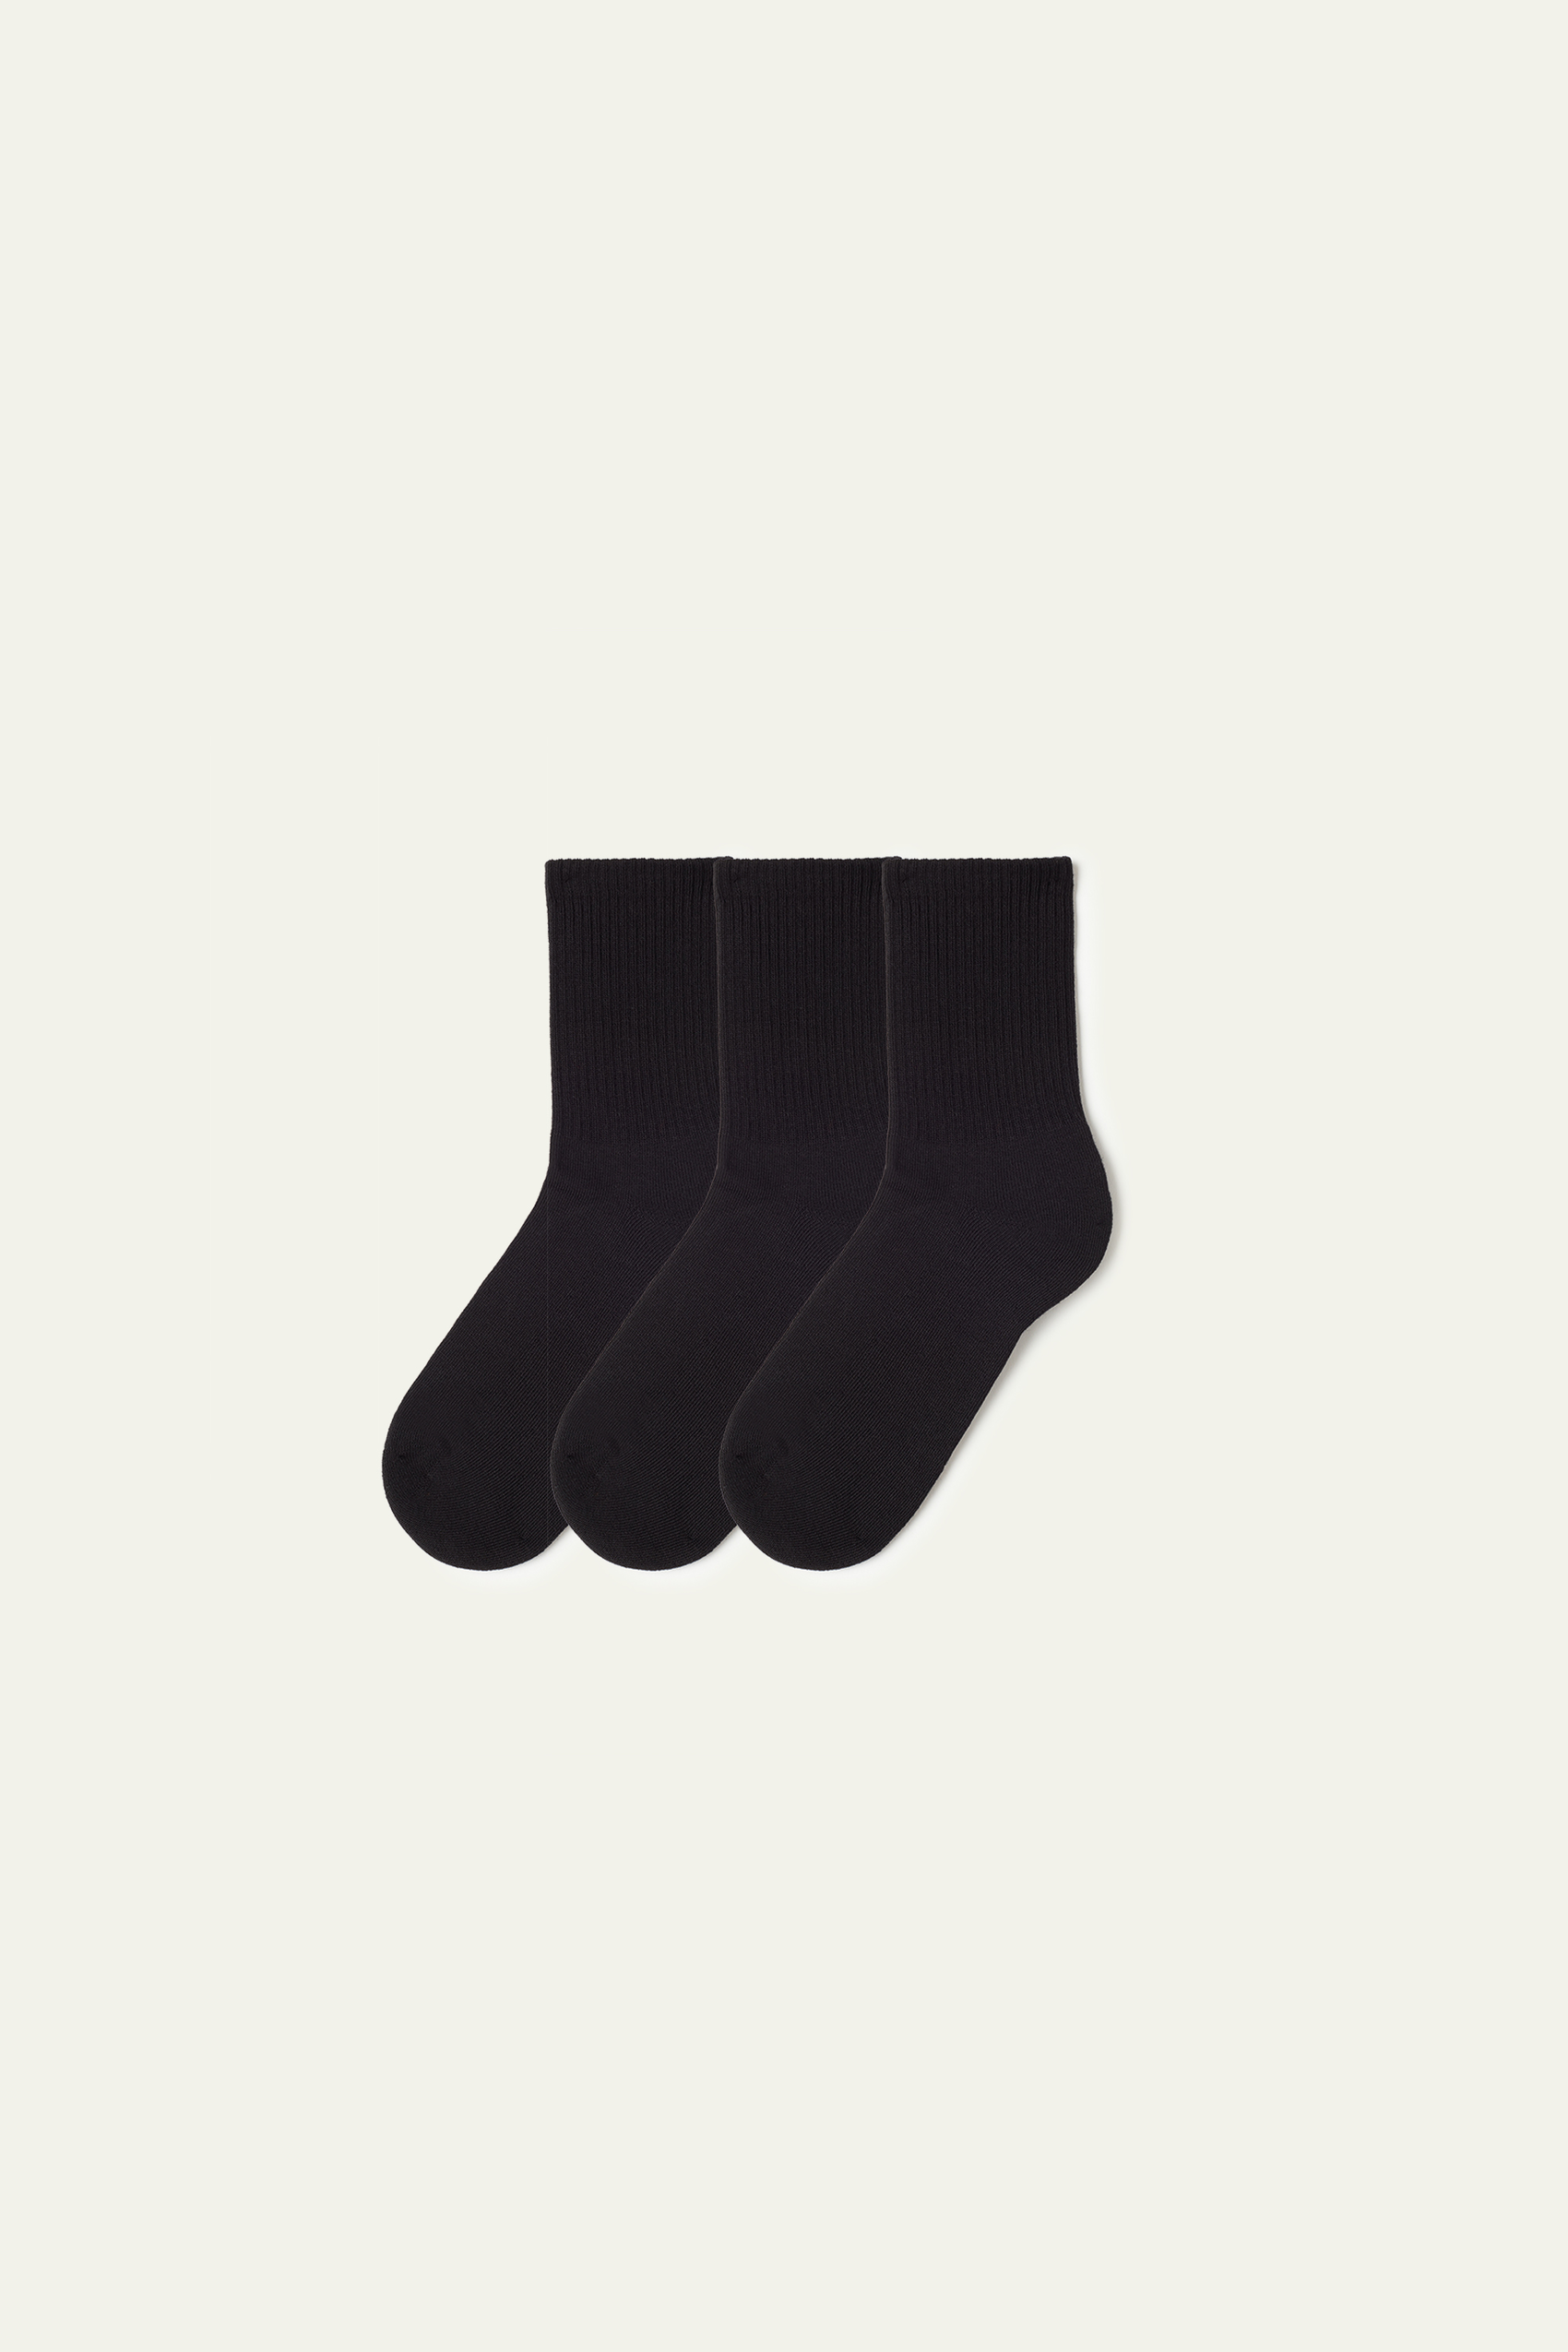 3 x Short Sports Socks